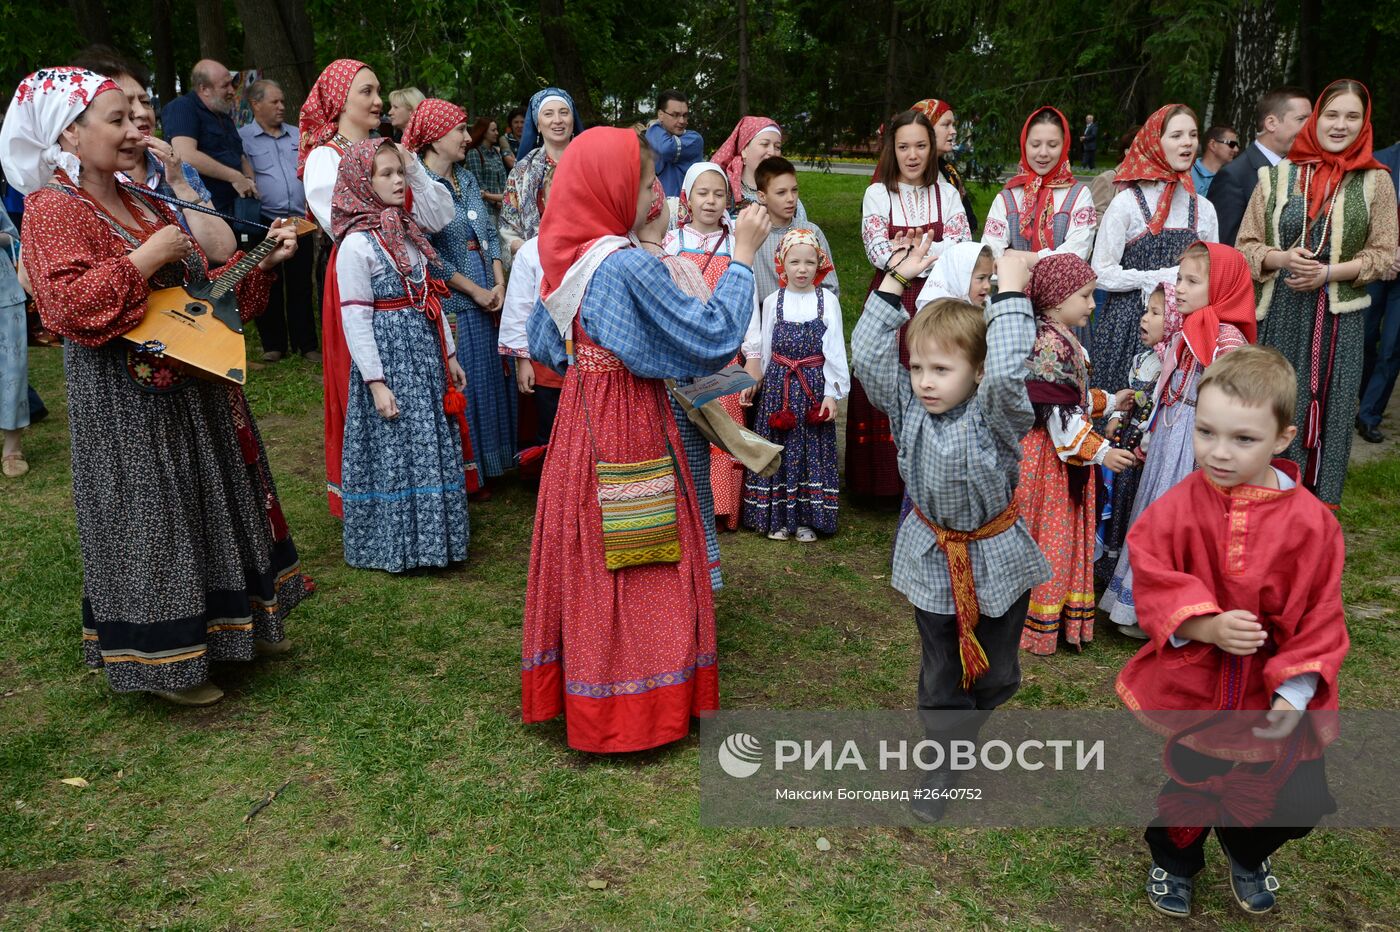 Празднование Дня России в регионах